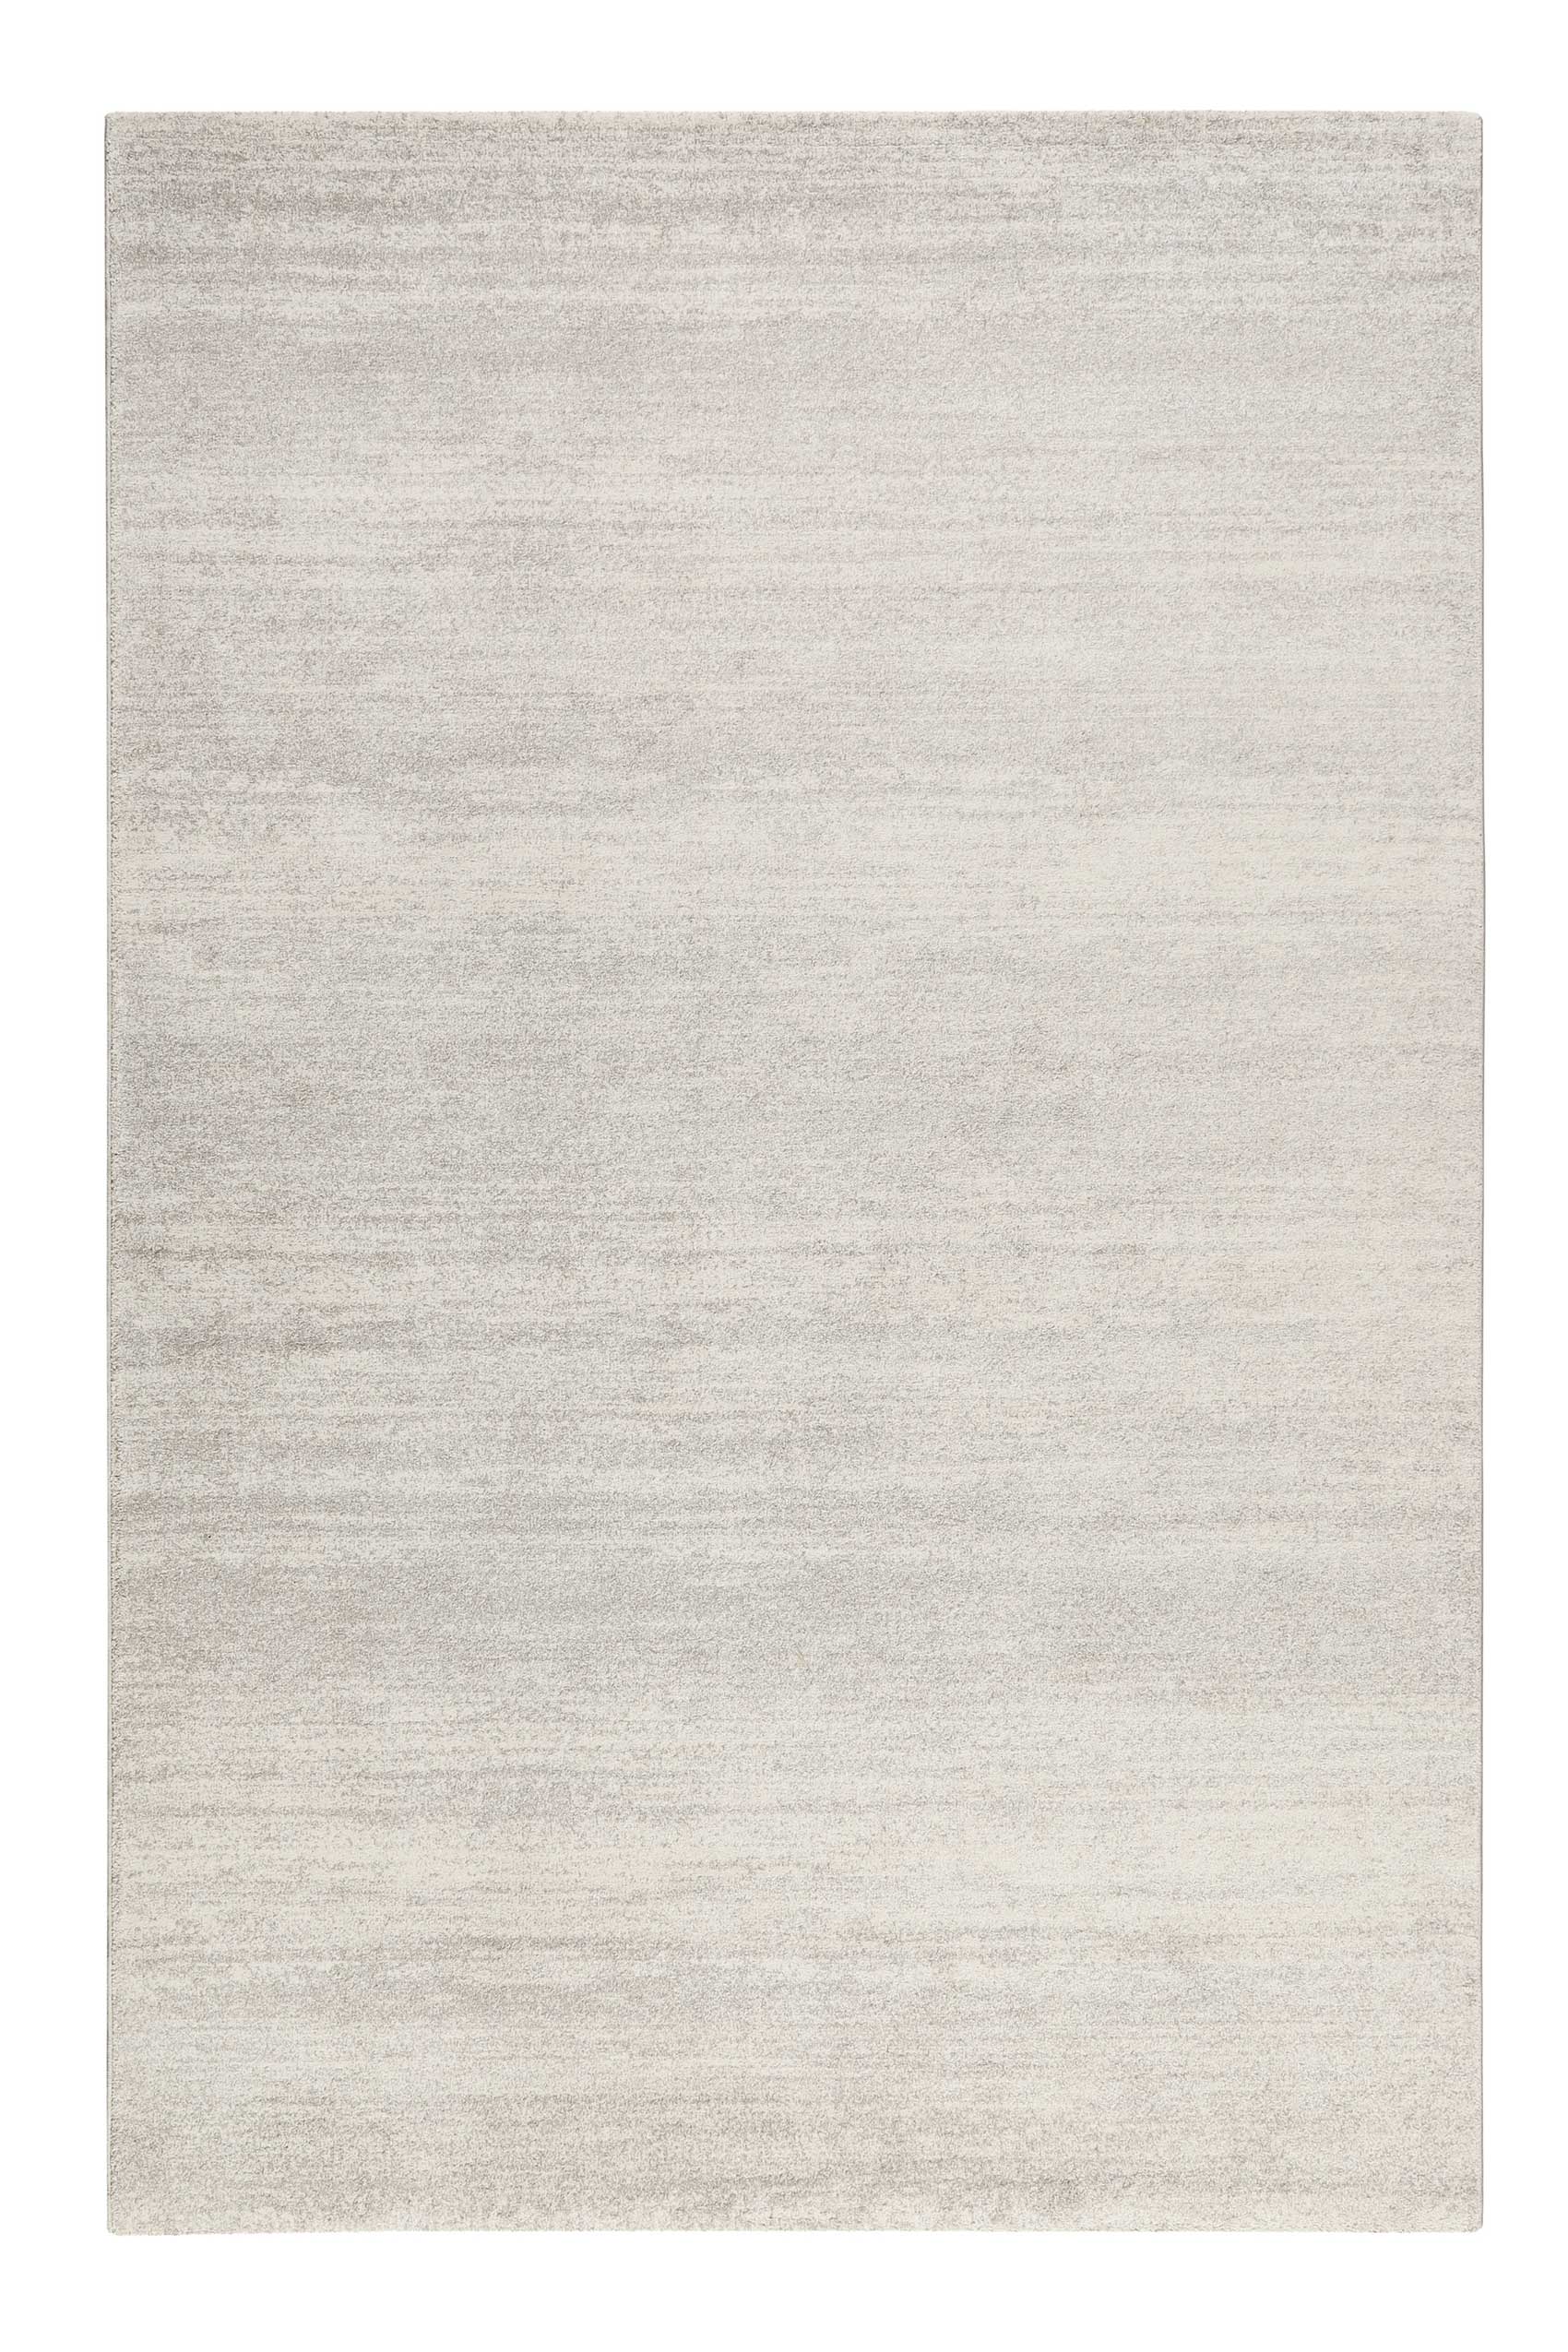 Tapis uni à velours ras gris chiné beige 290x200